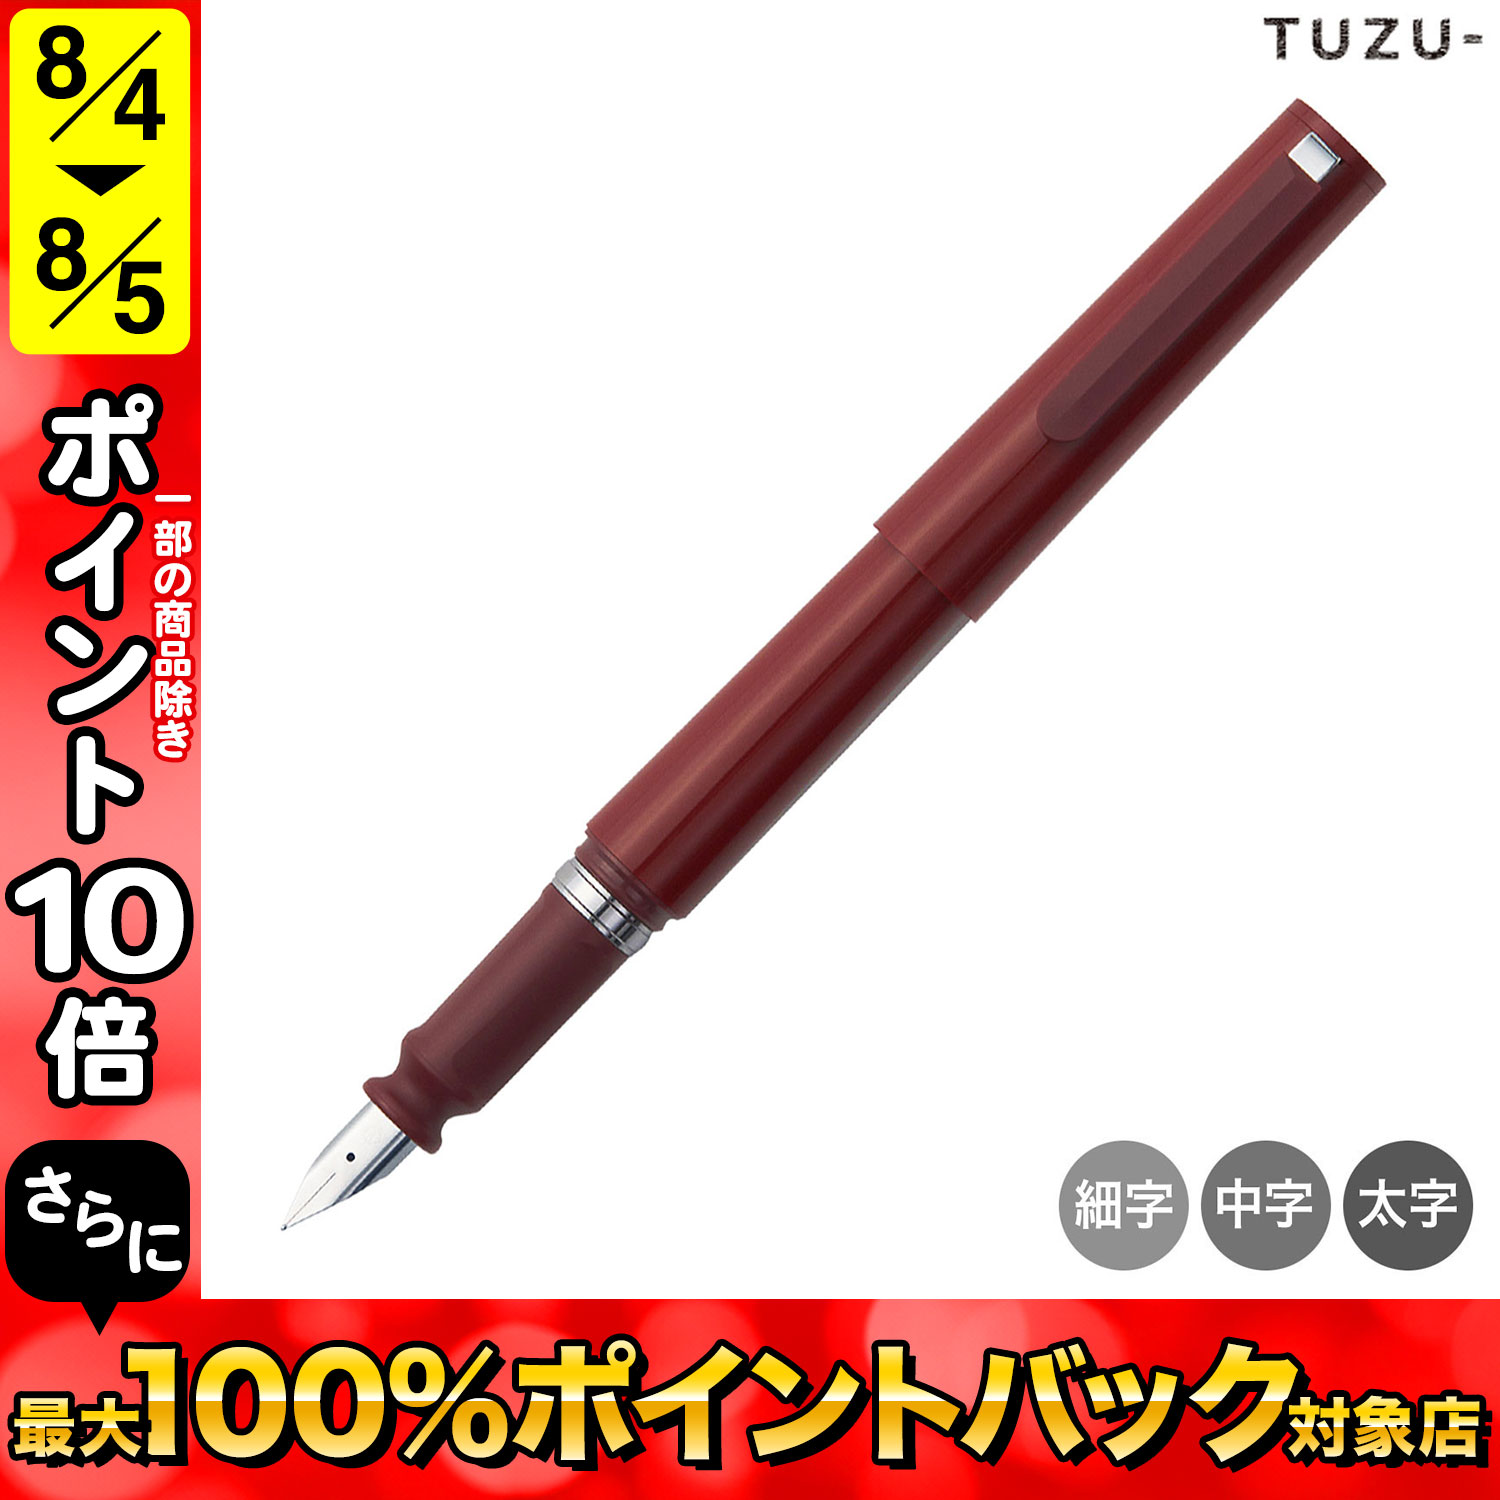 セーラー万年筆 TUZU ツヅ アジャスト万年筆 レッド 11-0541 全3種から選択